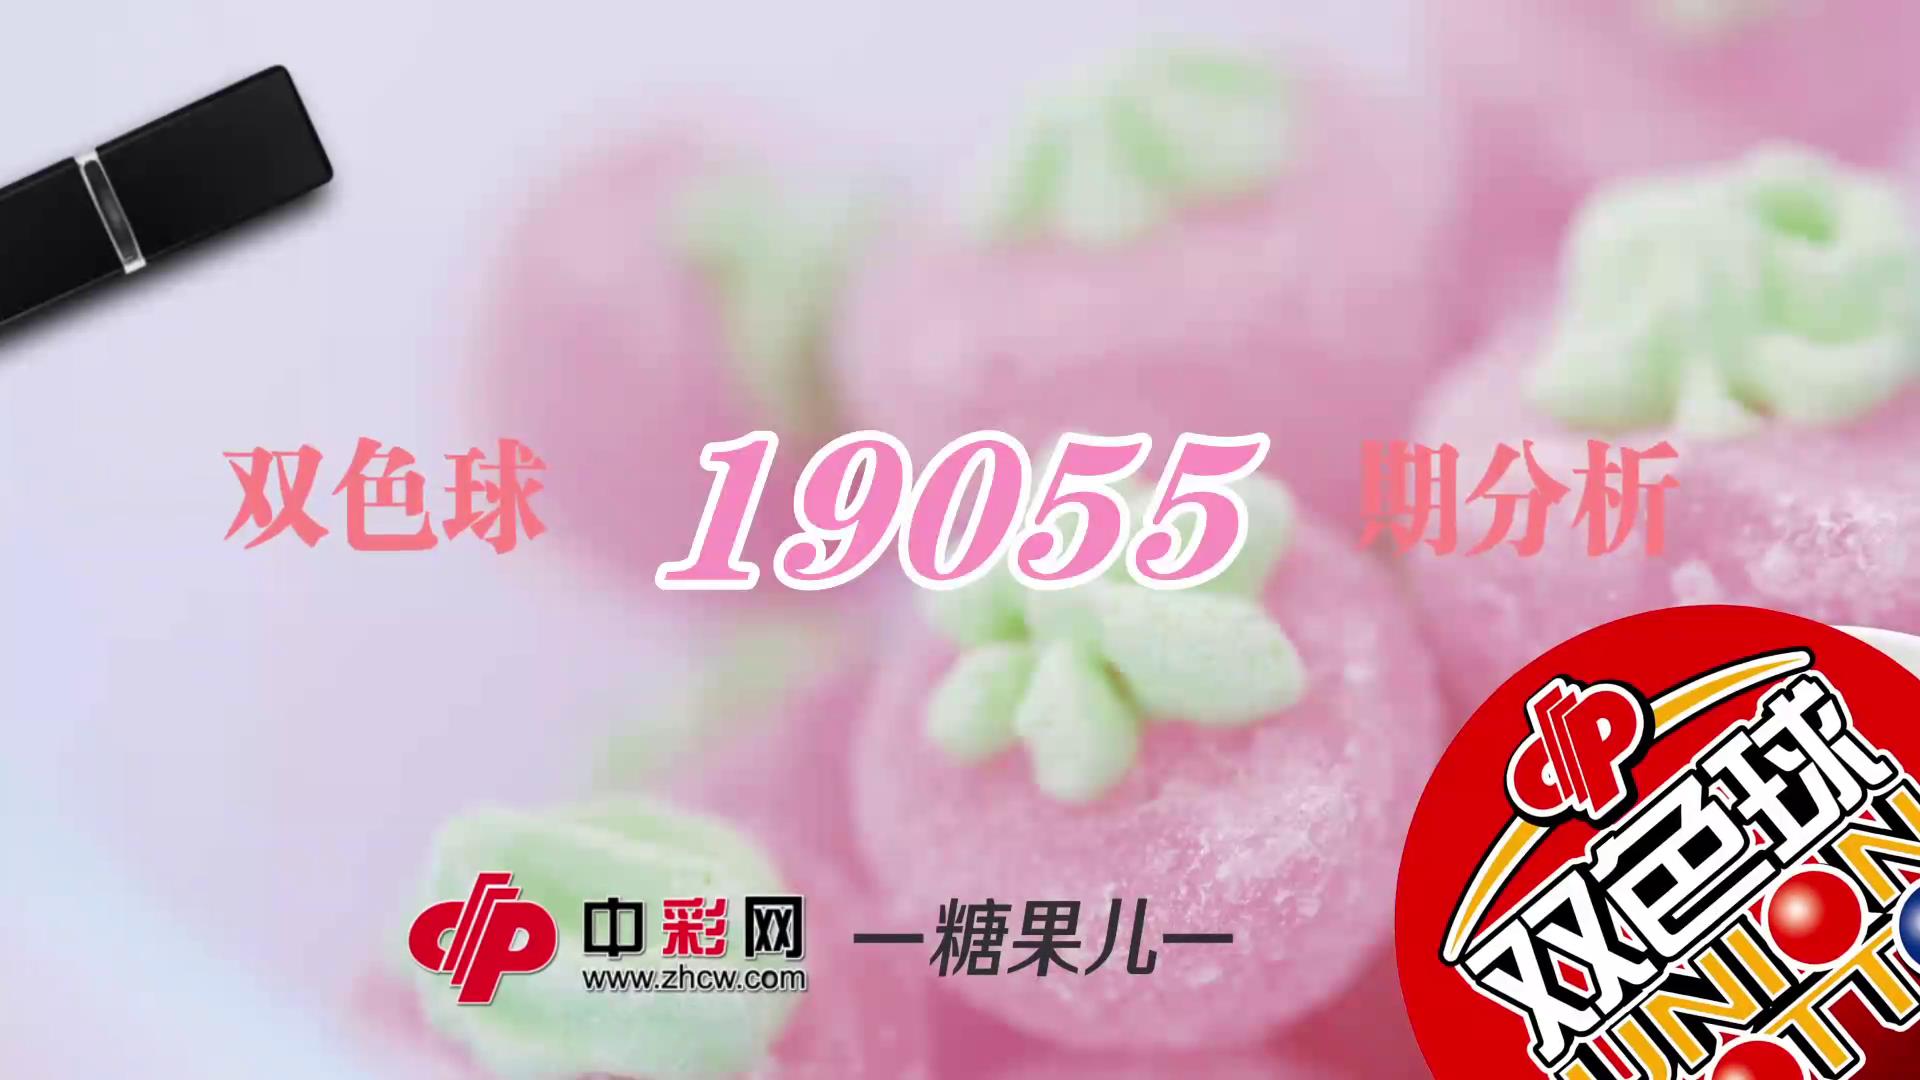 【中彩视频】糖果儿双色球第19055期